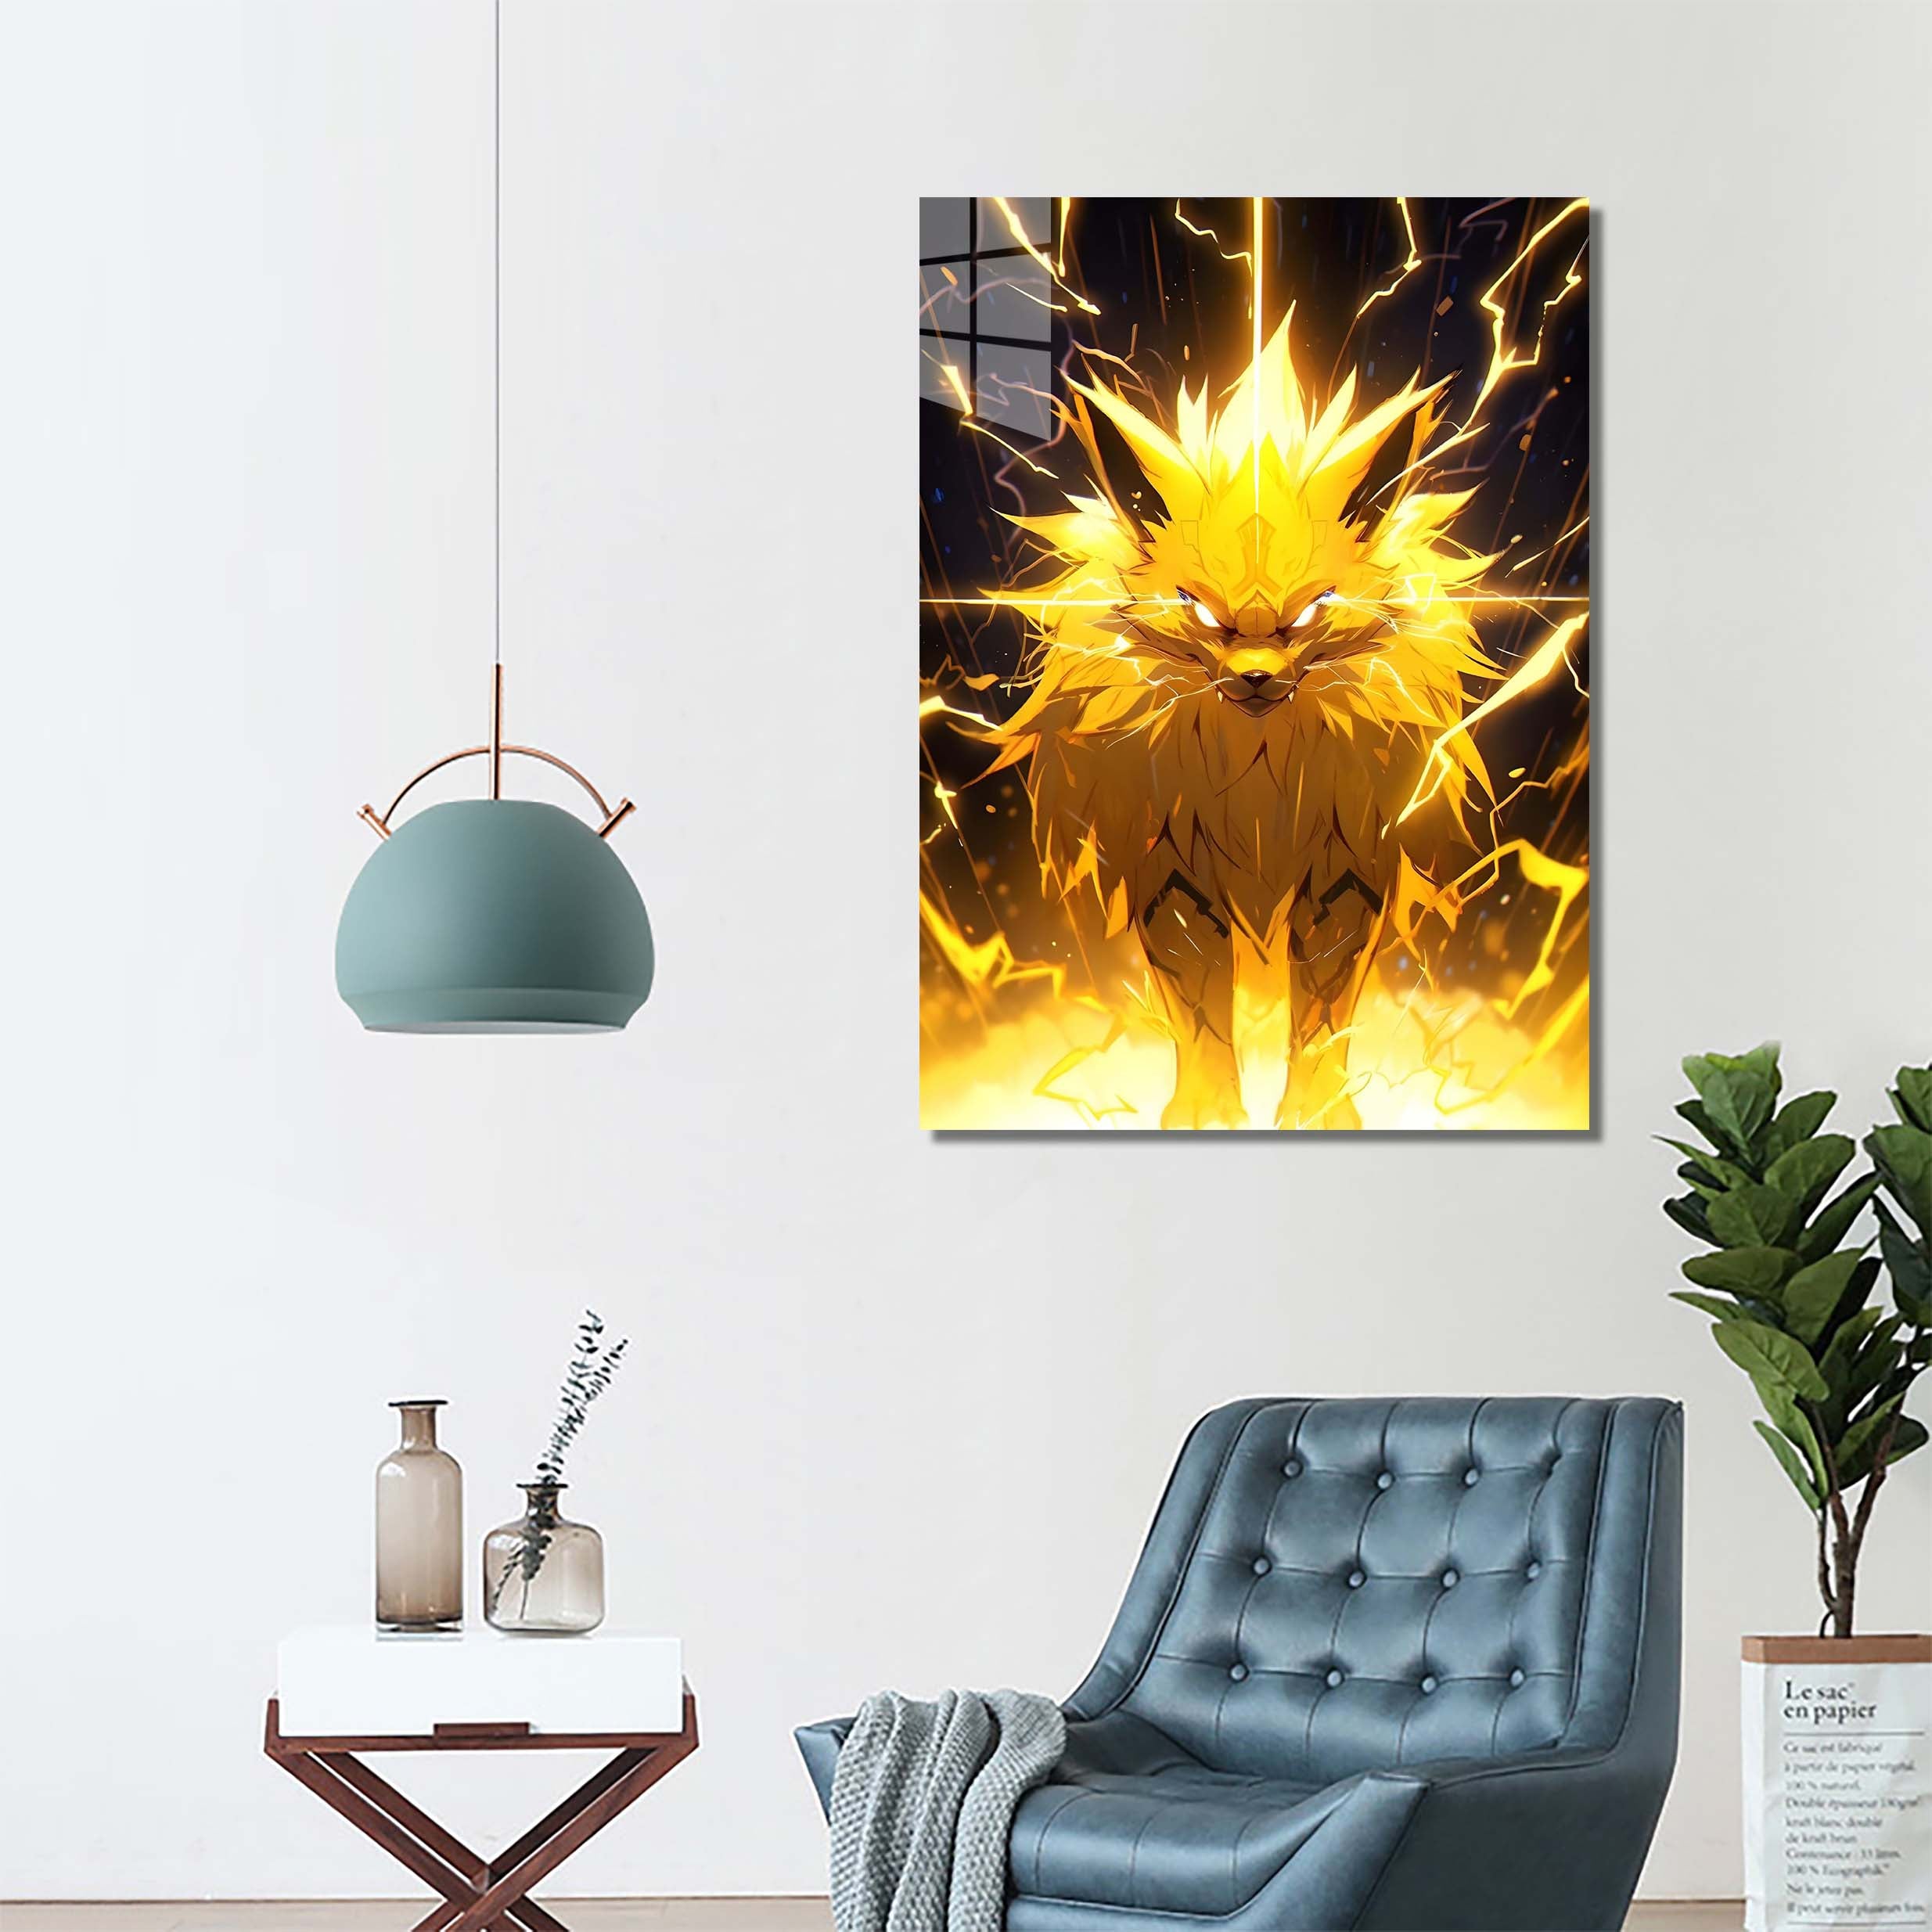 pikachu pro-designed by @mauls.Art